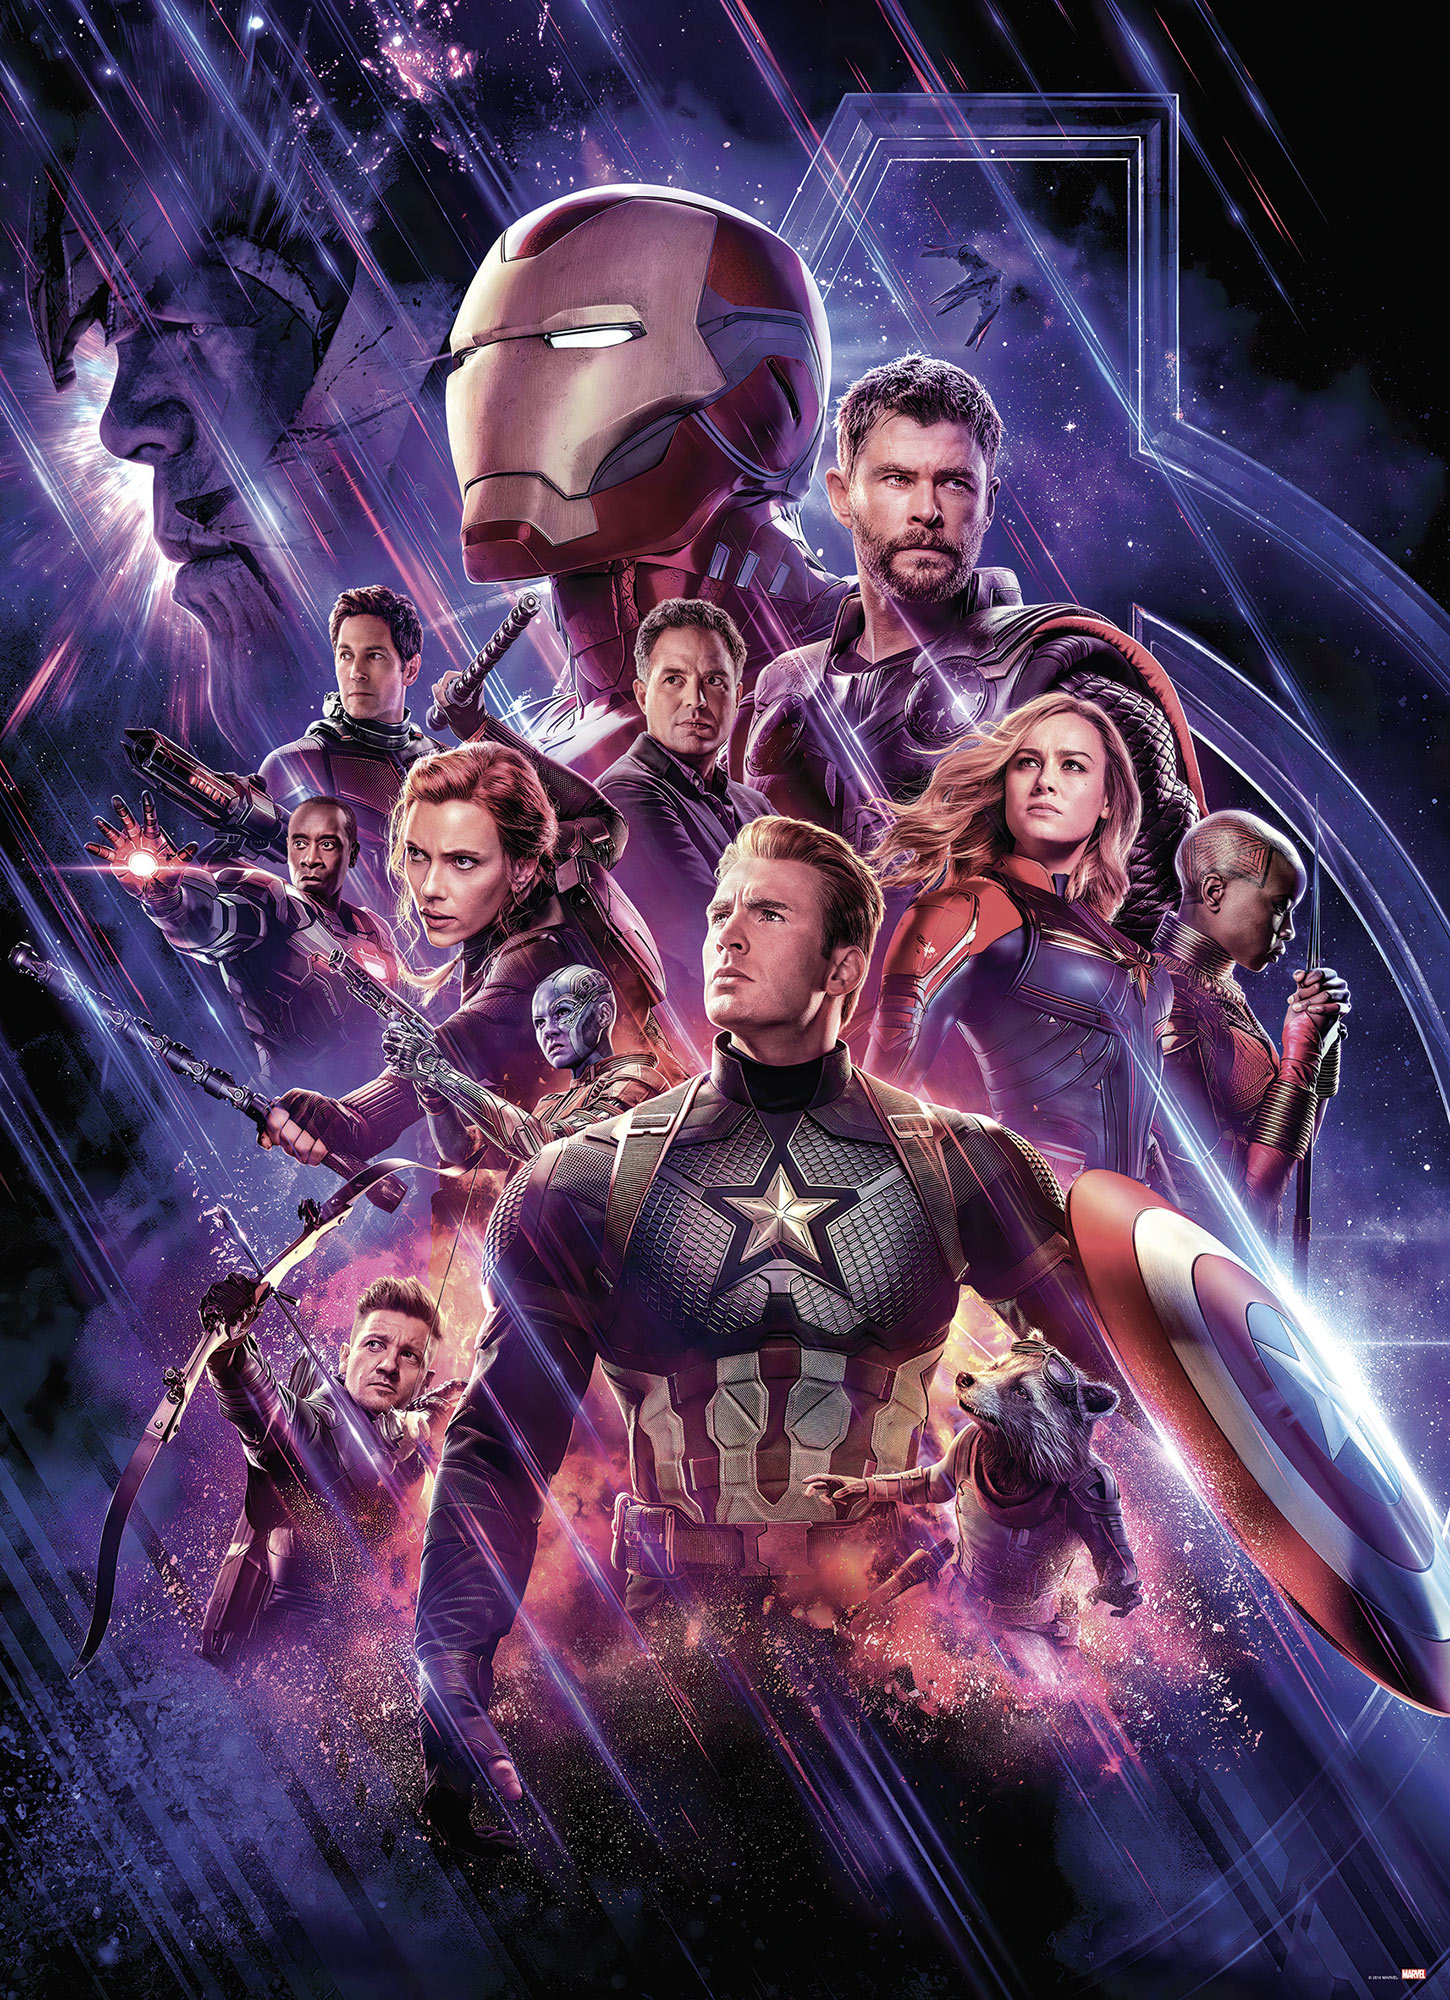 Komar Fototapete "Avengers Endgame Movie Poster" von Komar